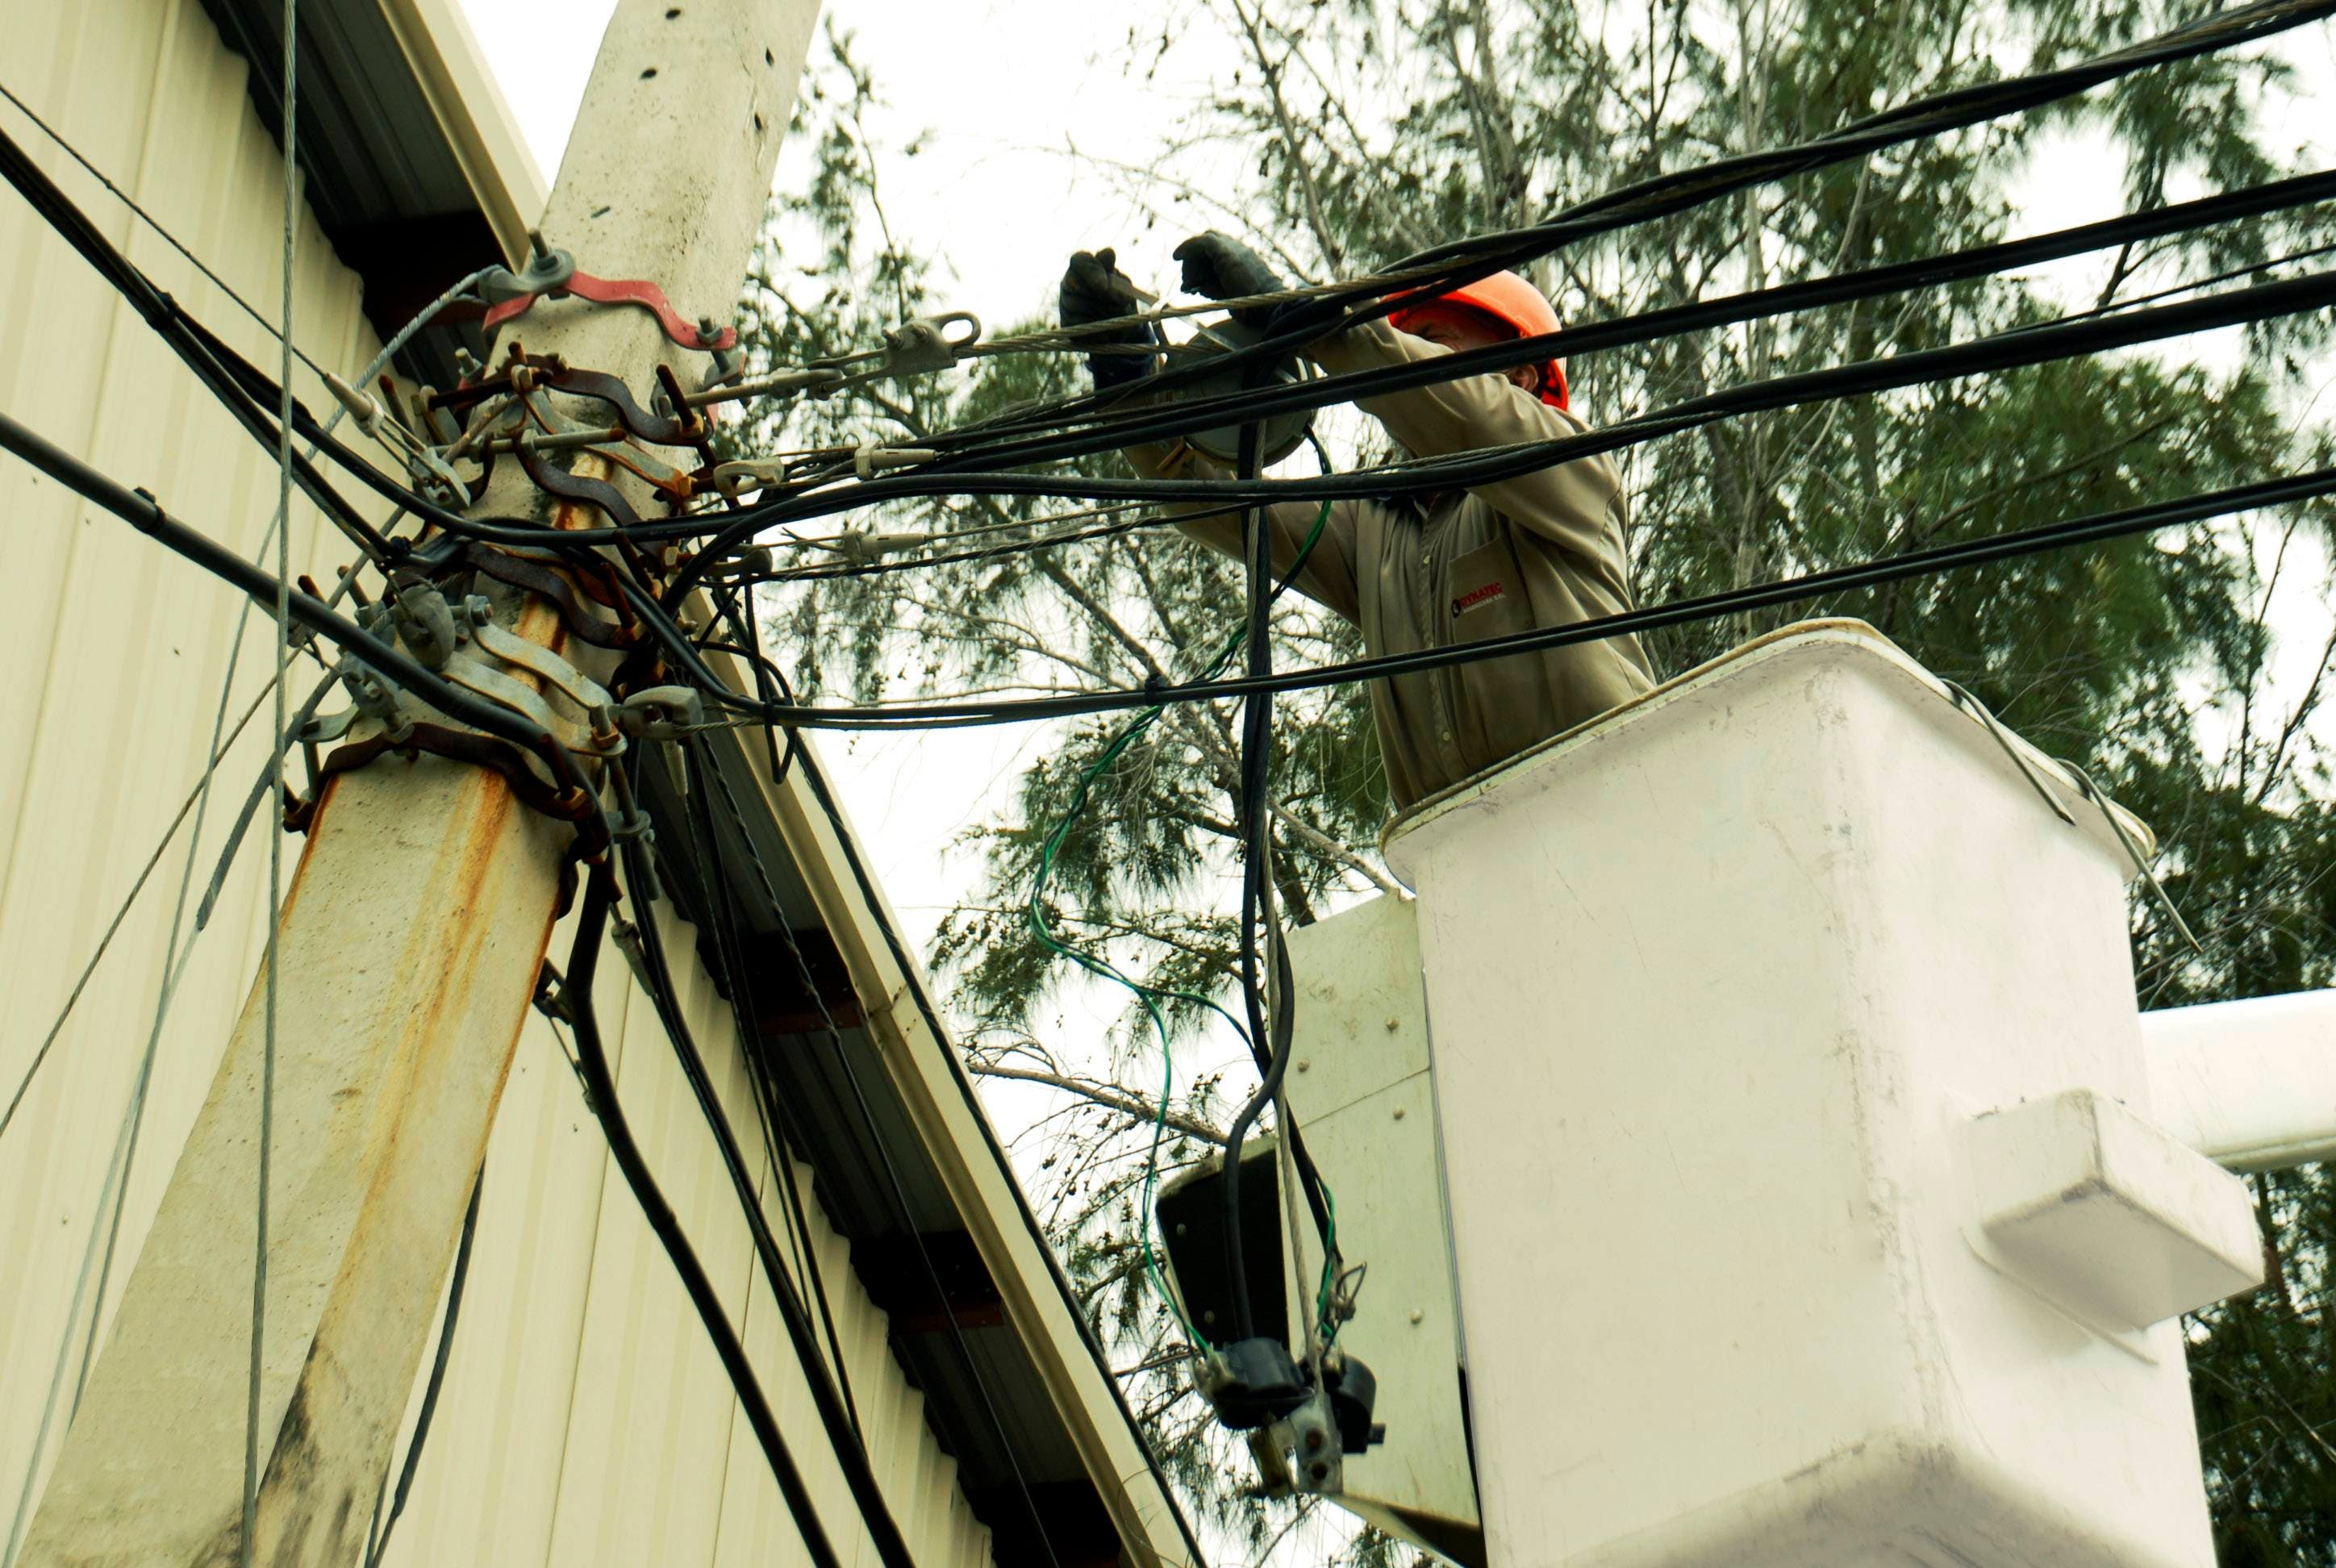 Edesur Dominicana informa que reestablece servicio eléctrico luego de huracán Matthew